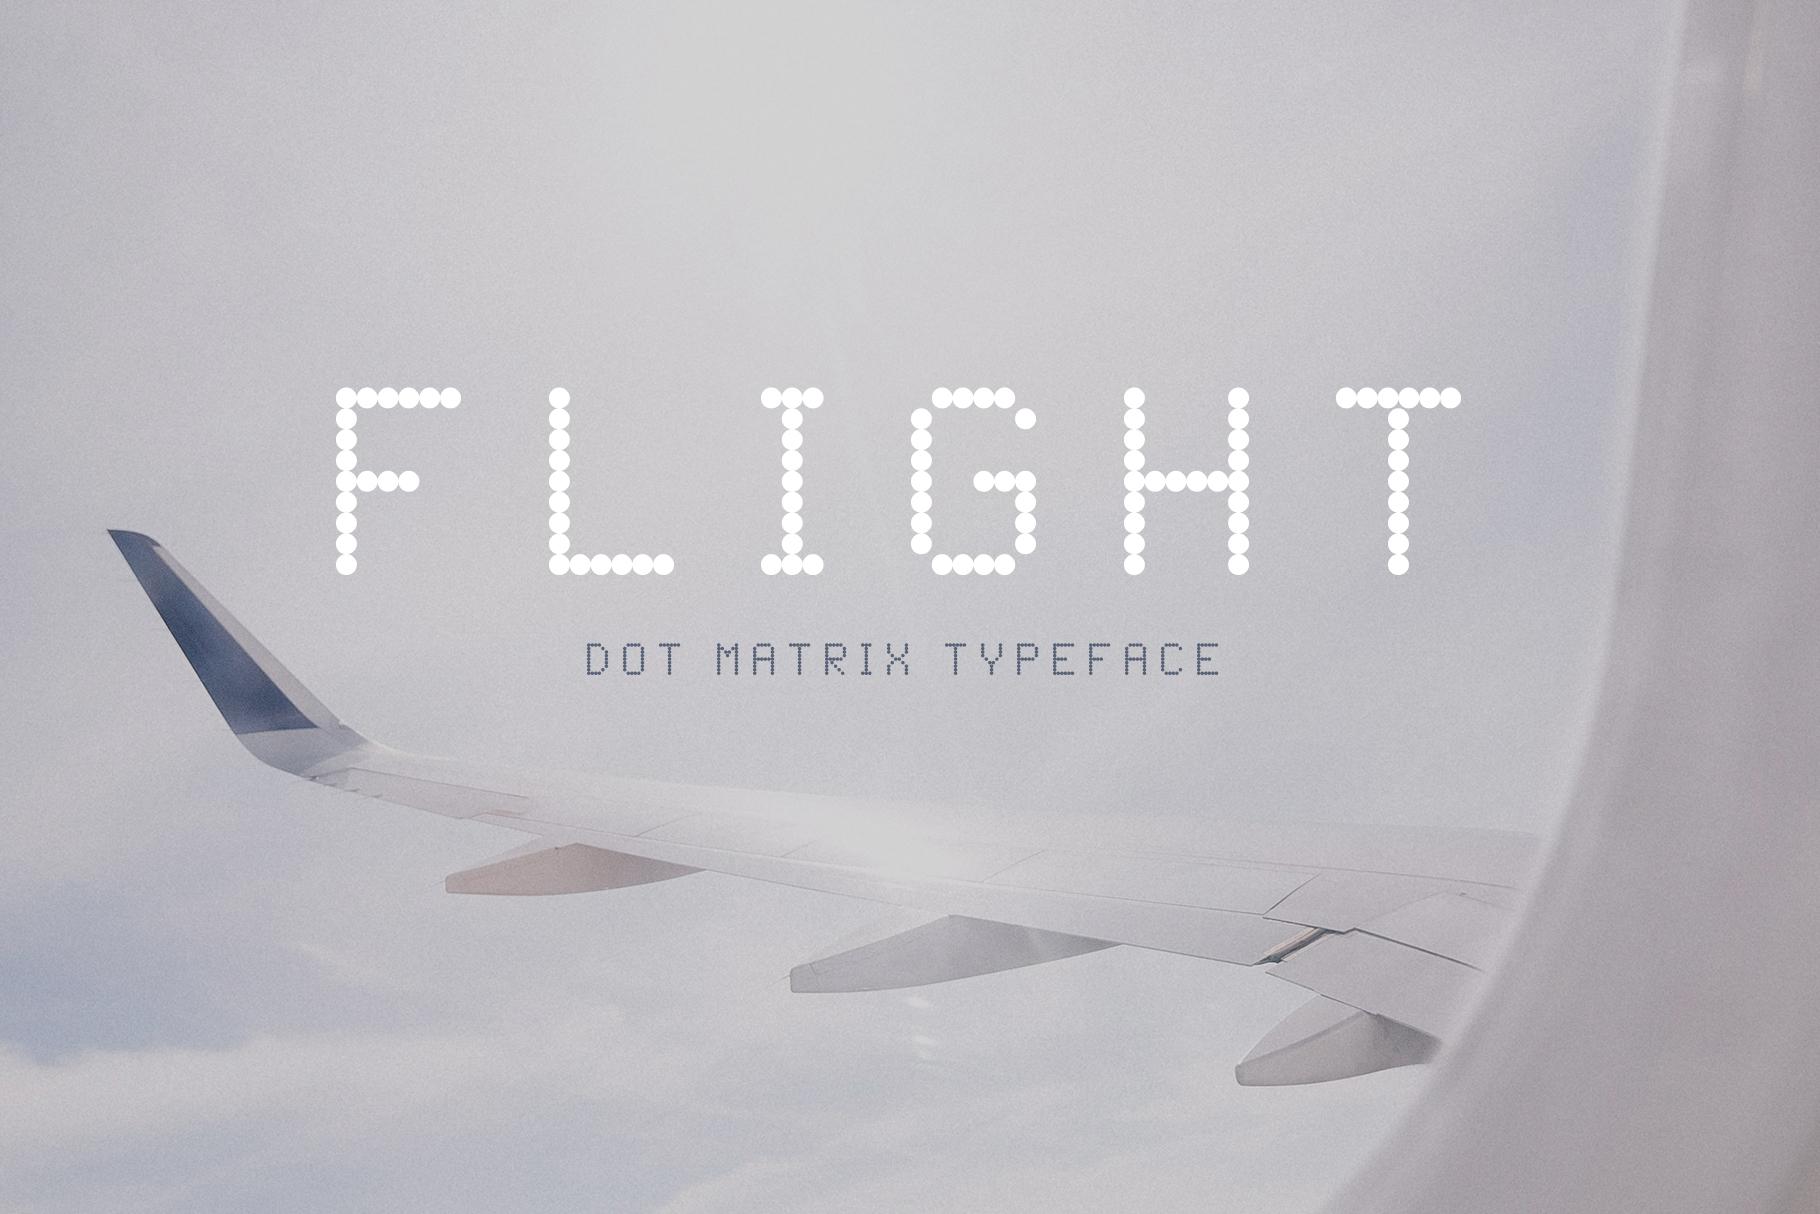 Flight Font